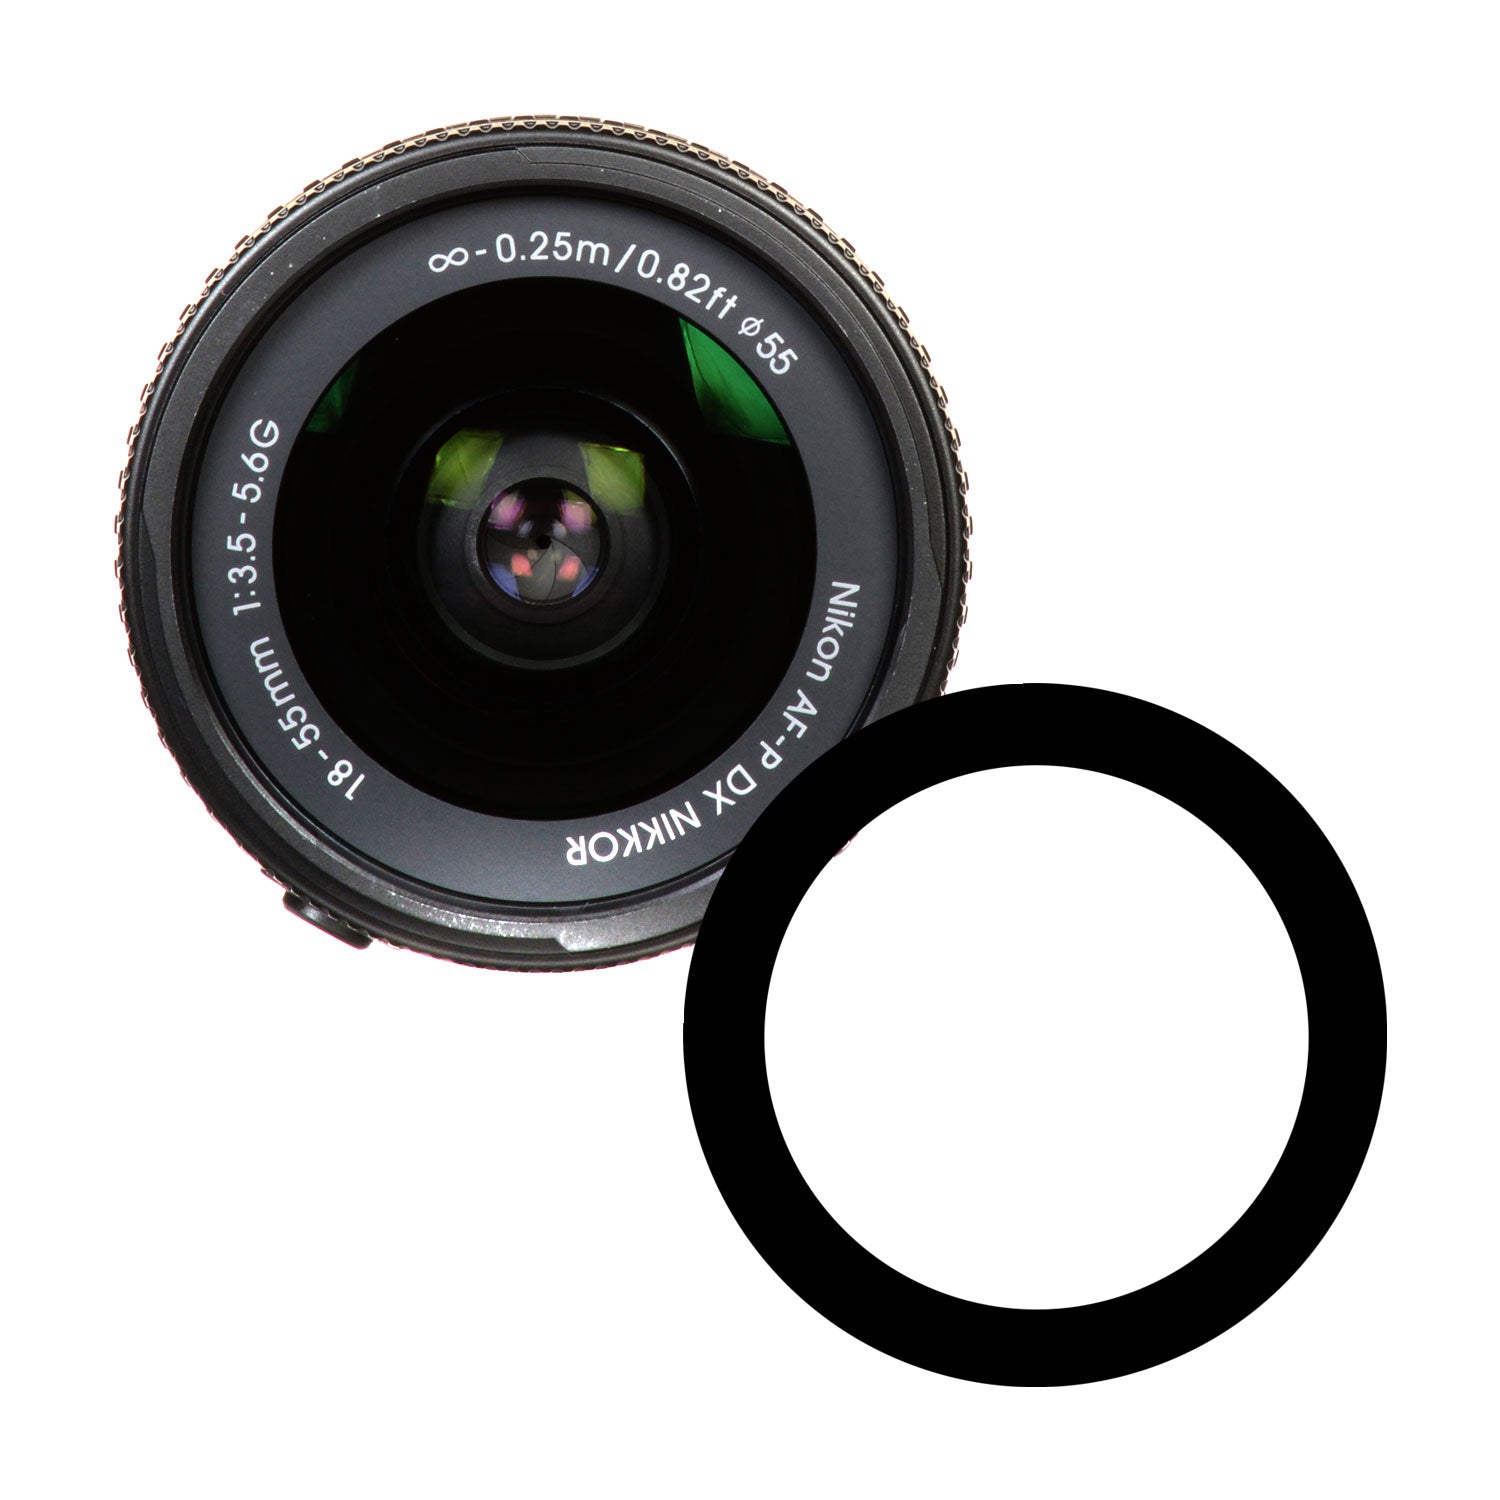 Anti-Reflection Ring for Nikon 18-55mm AF-P DX f/3.5-5.6G Lens